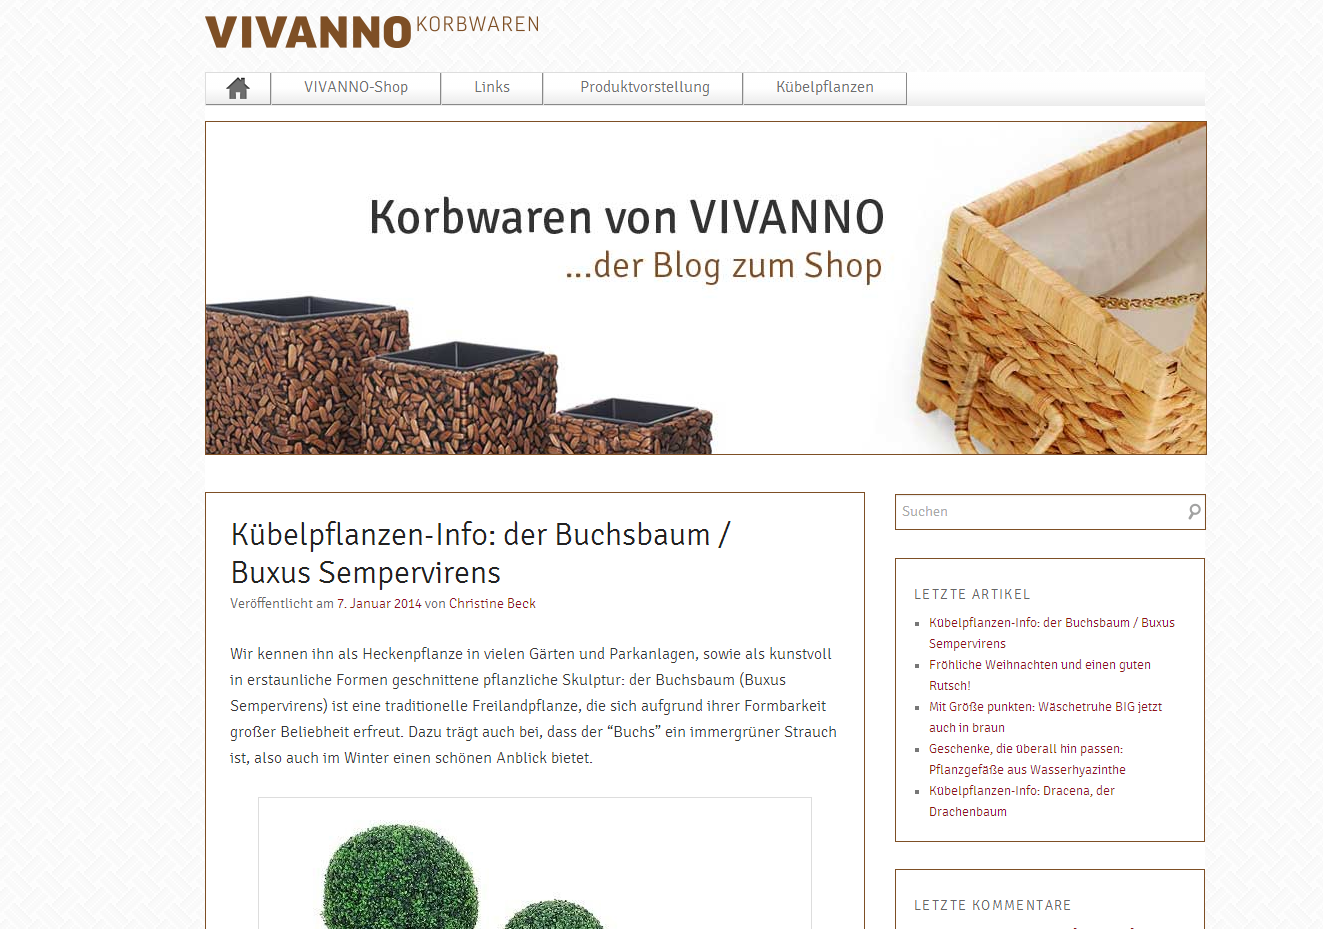 Vivanno Korbwaren - das Blog - Korbwaren aus Rattan, Wasserhyazinthe, Polyrattan, Weide, Truhen, Wäschekörbe, Regalkörbe, Pflanzgefäße